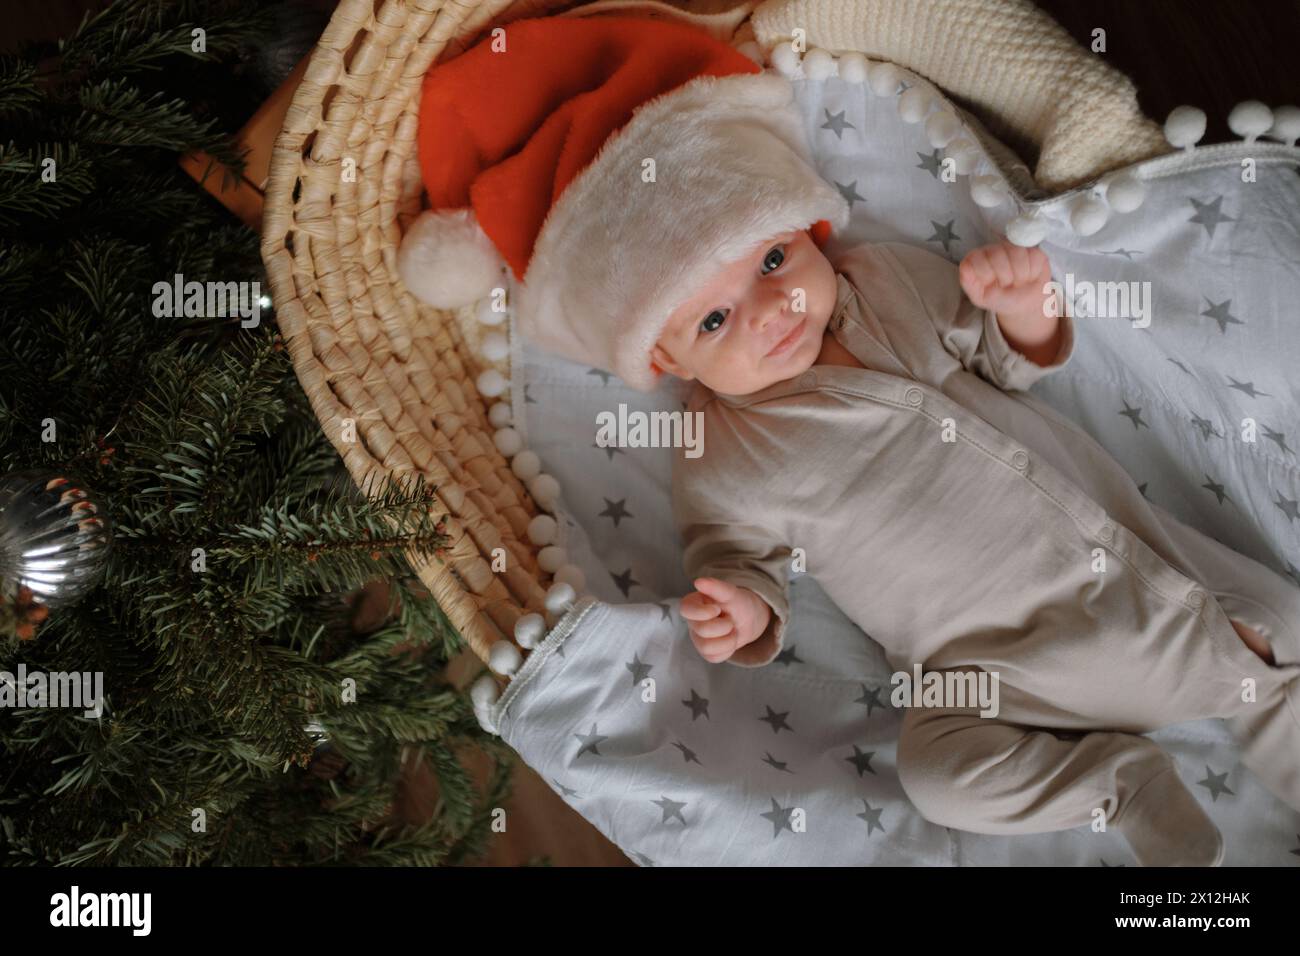 Le nouveau-né est couché dans un berceau, portant un chapeau de Père Noël. Banque D'Images